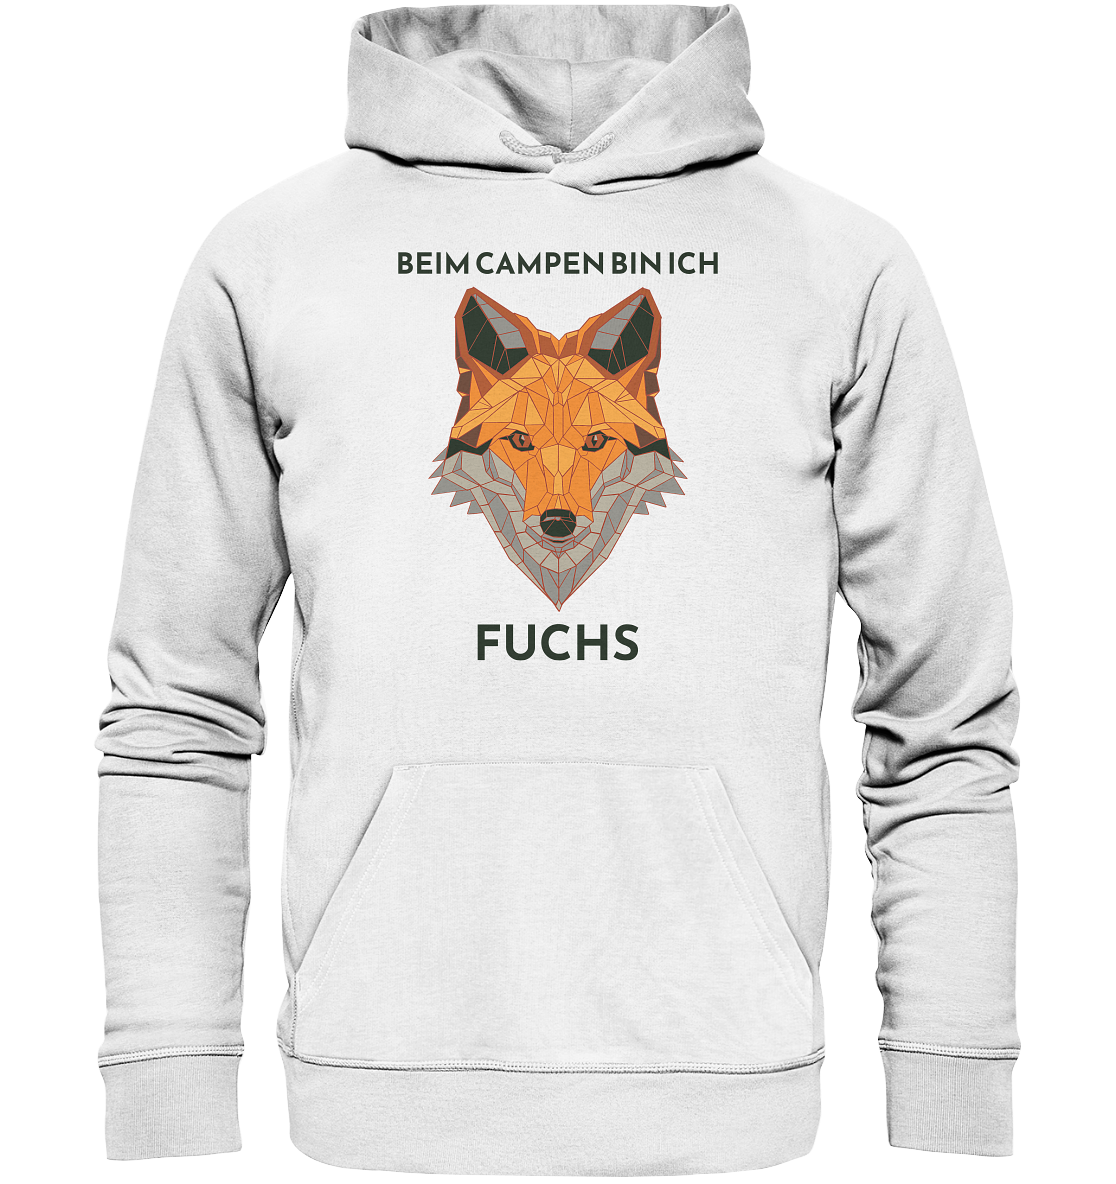 Beim Campen bin ich Fuchs - Organic Basic Hoodie